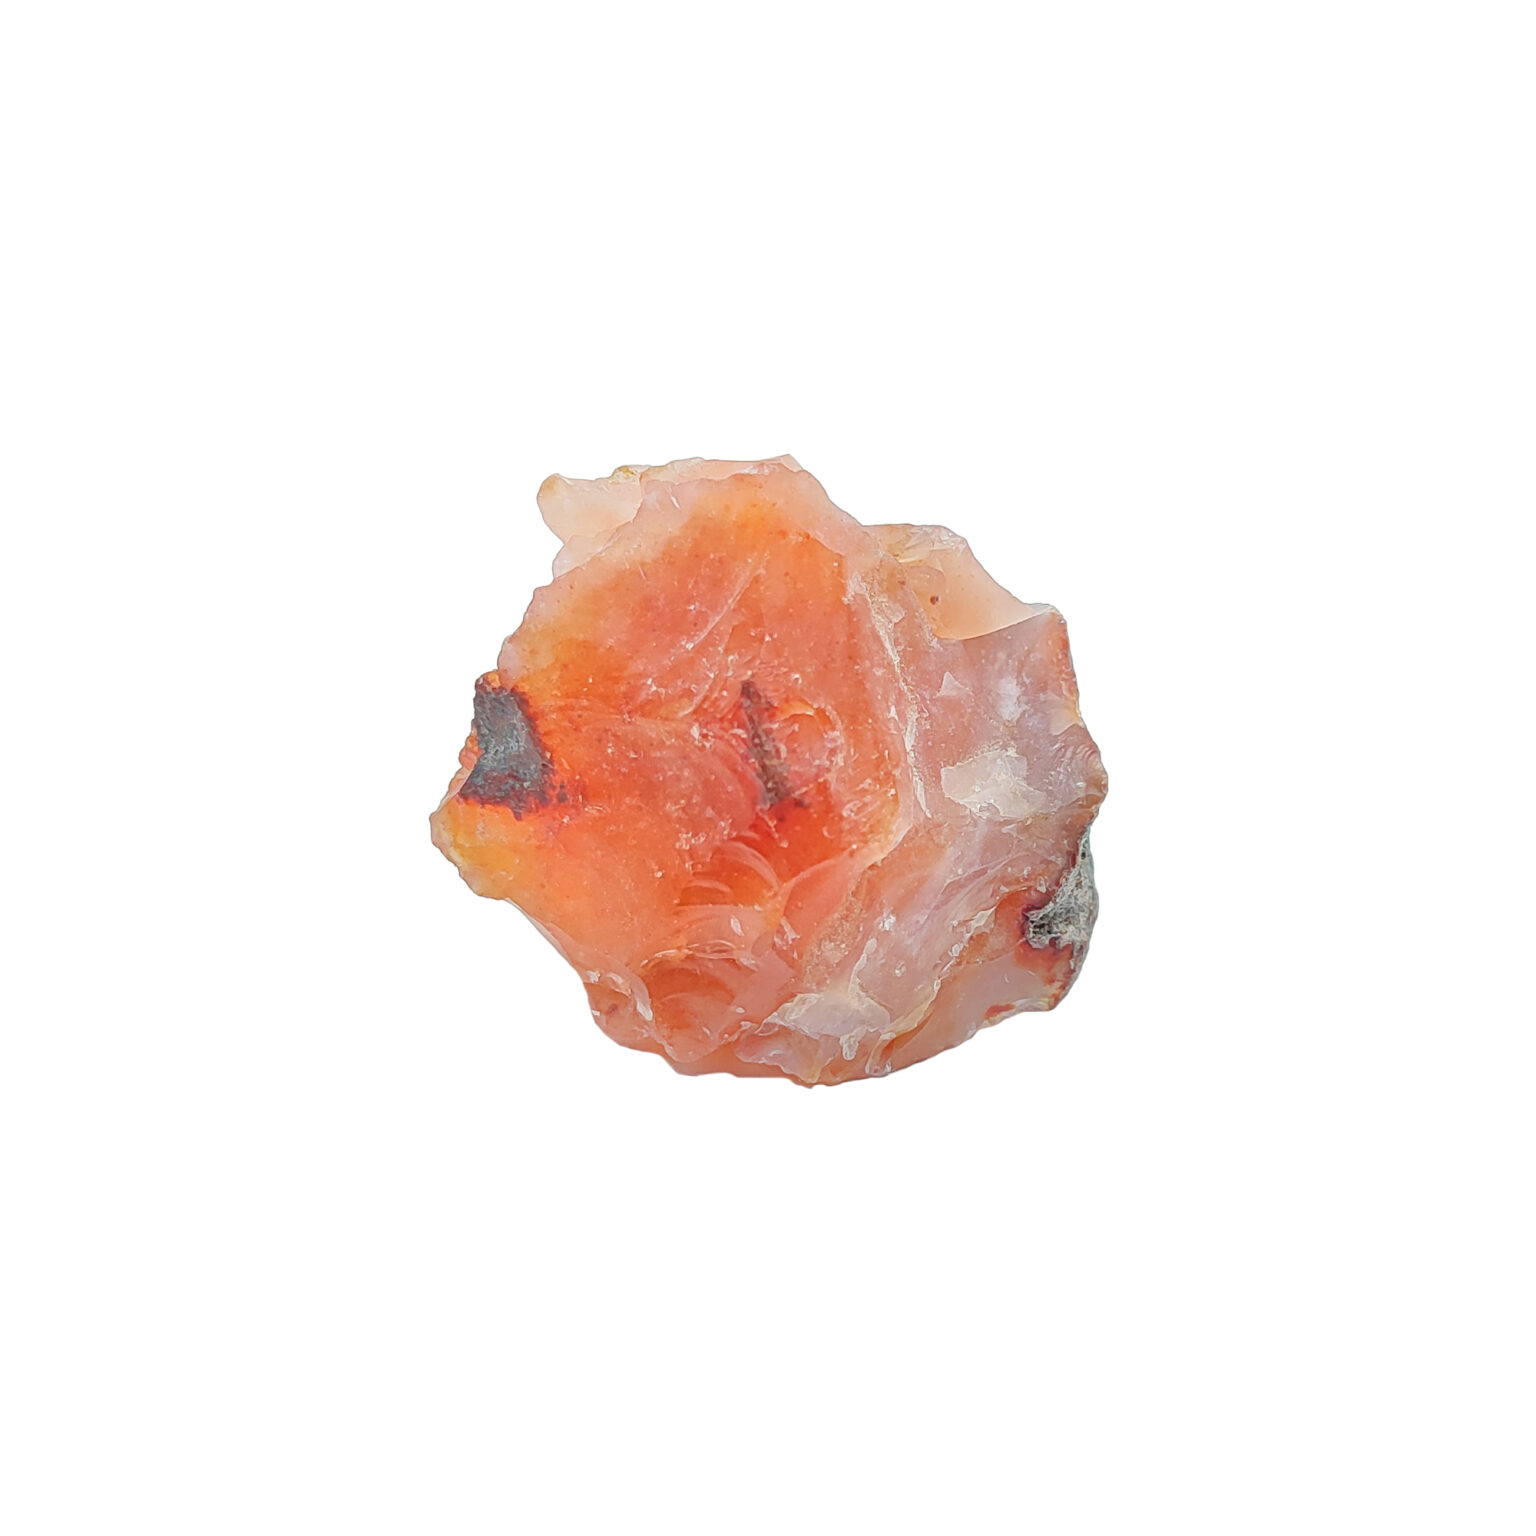 Intensiv orangener Karneol mit verspielter Kristallstruktur & weißen Quarzarealen.